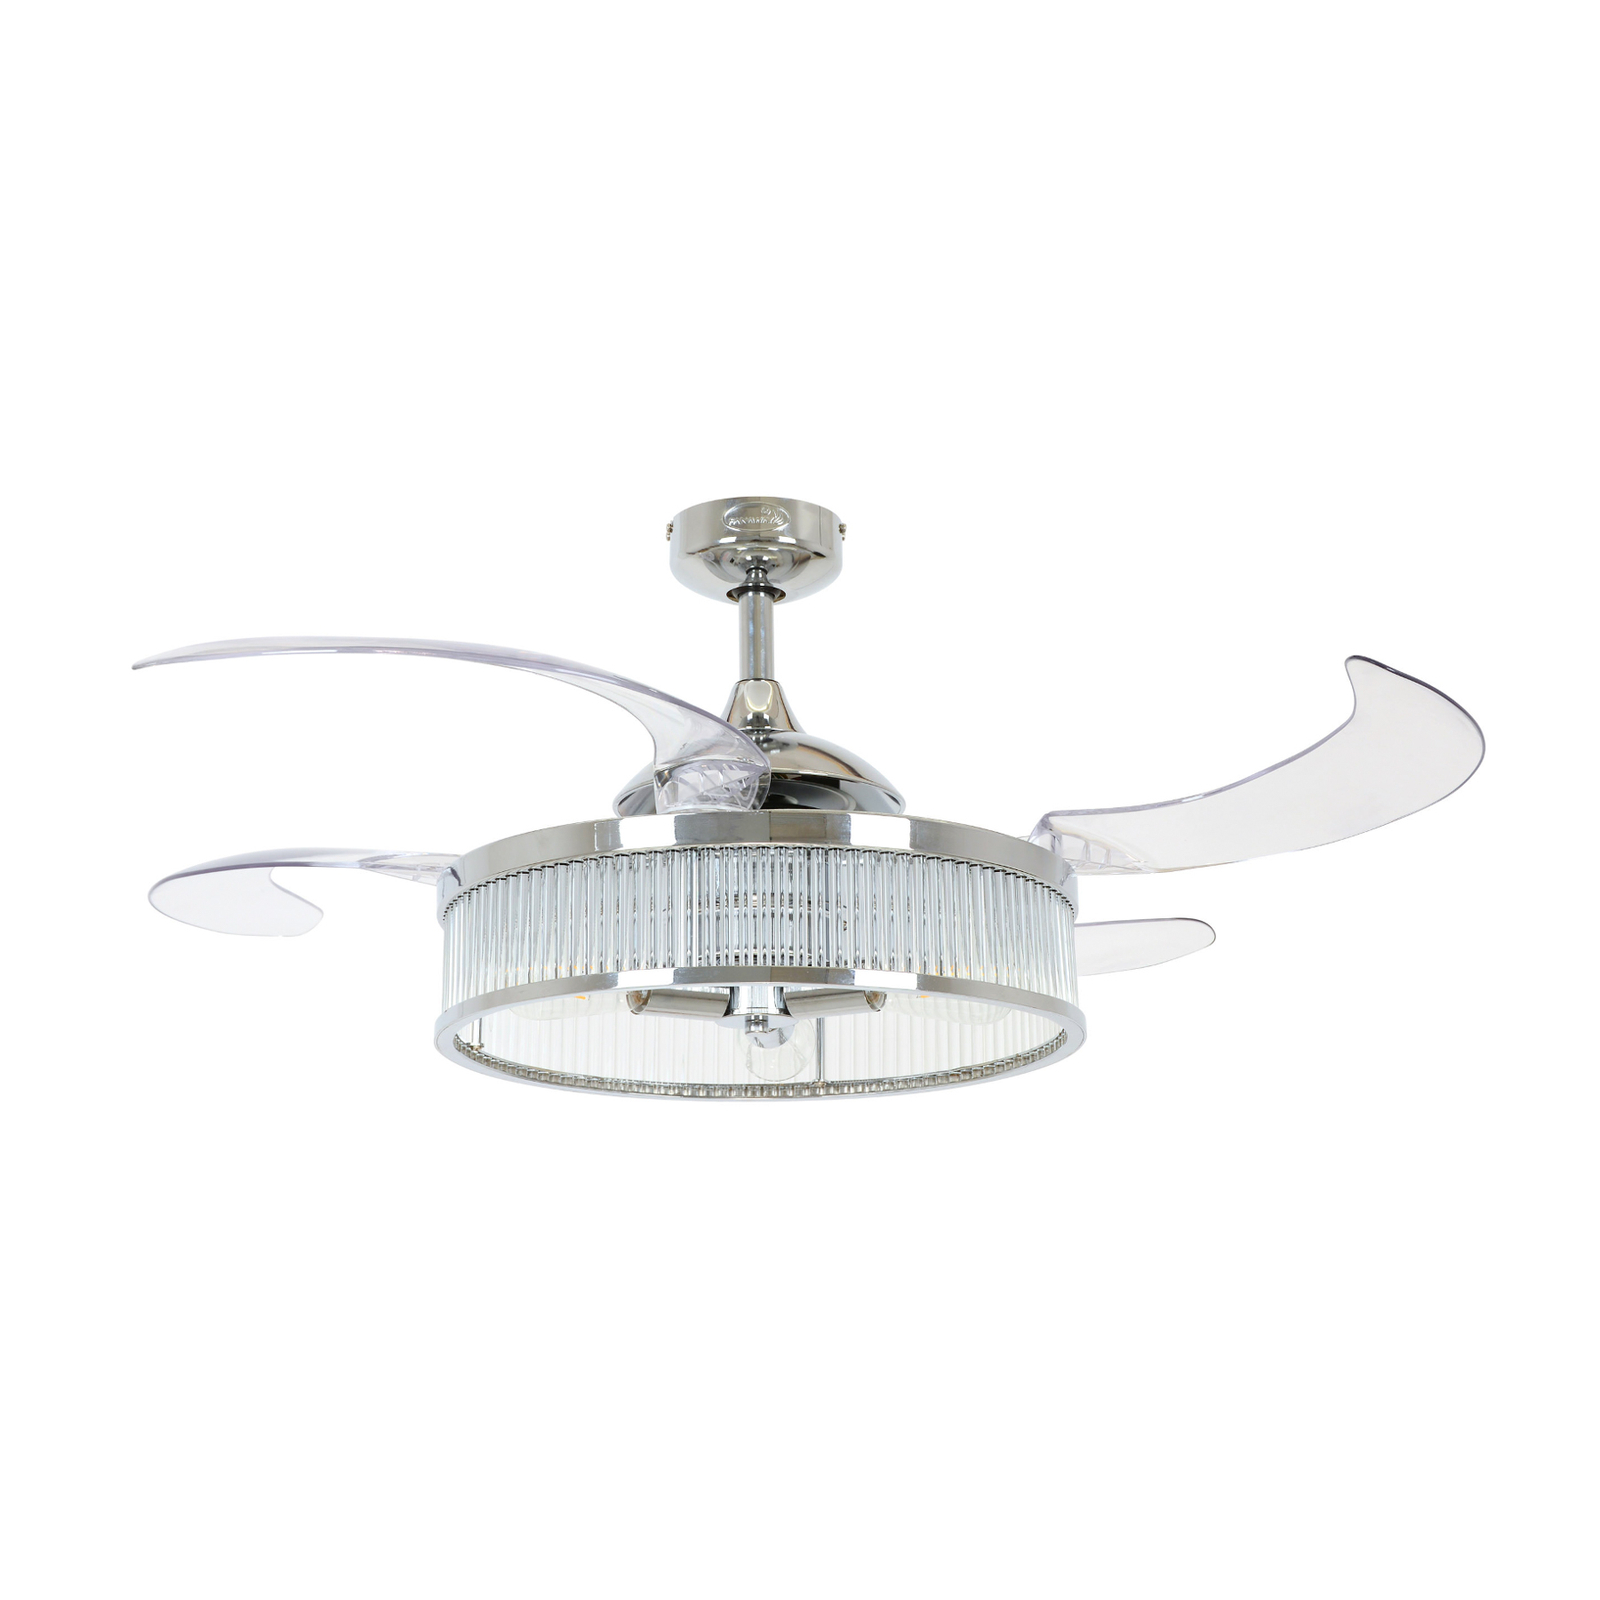 Beacon ceiling fan light Fanaway Corbelle chrome silent